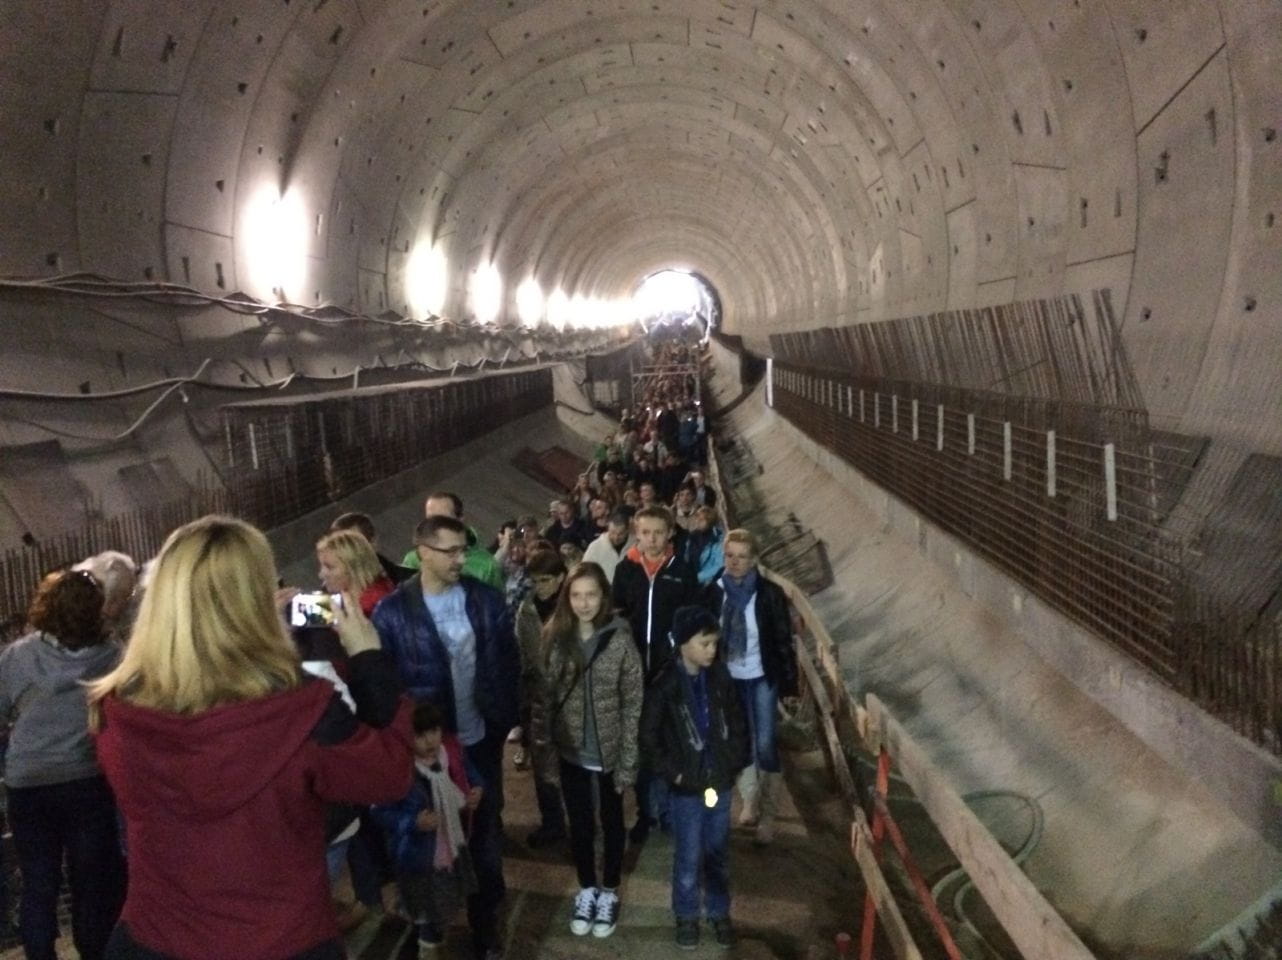 Kolejka zwiedzających w tunelu nie miała końca.